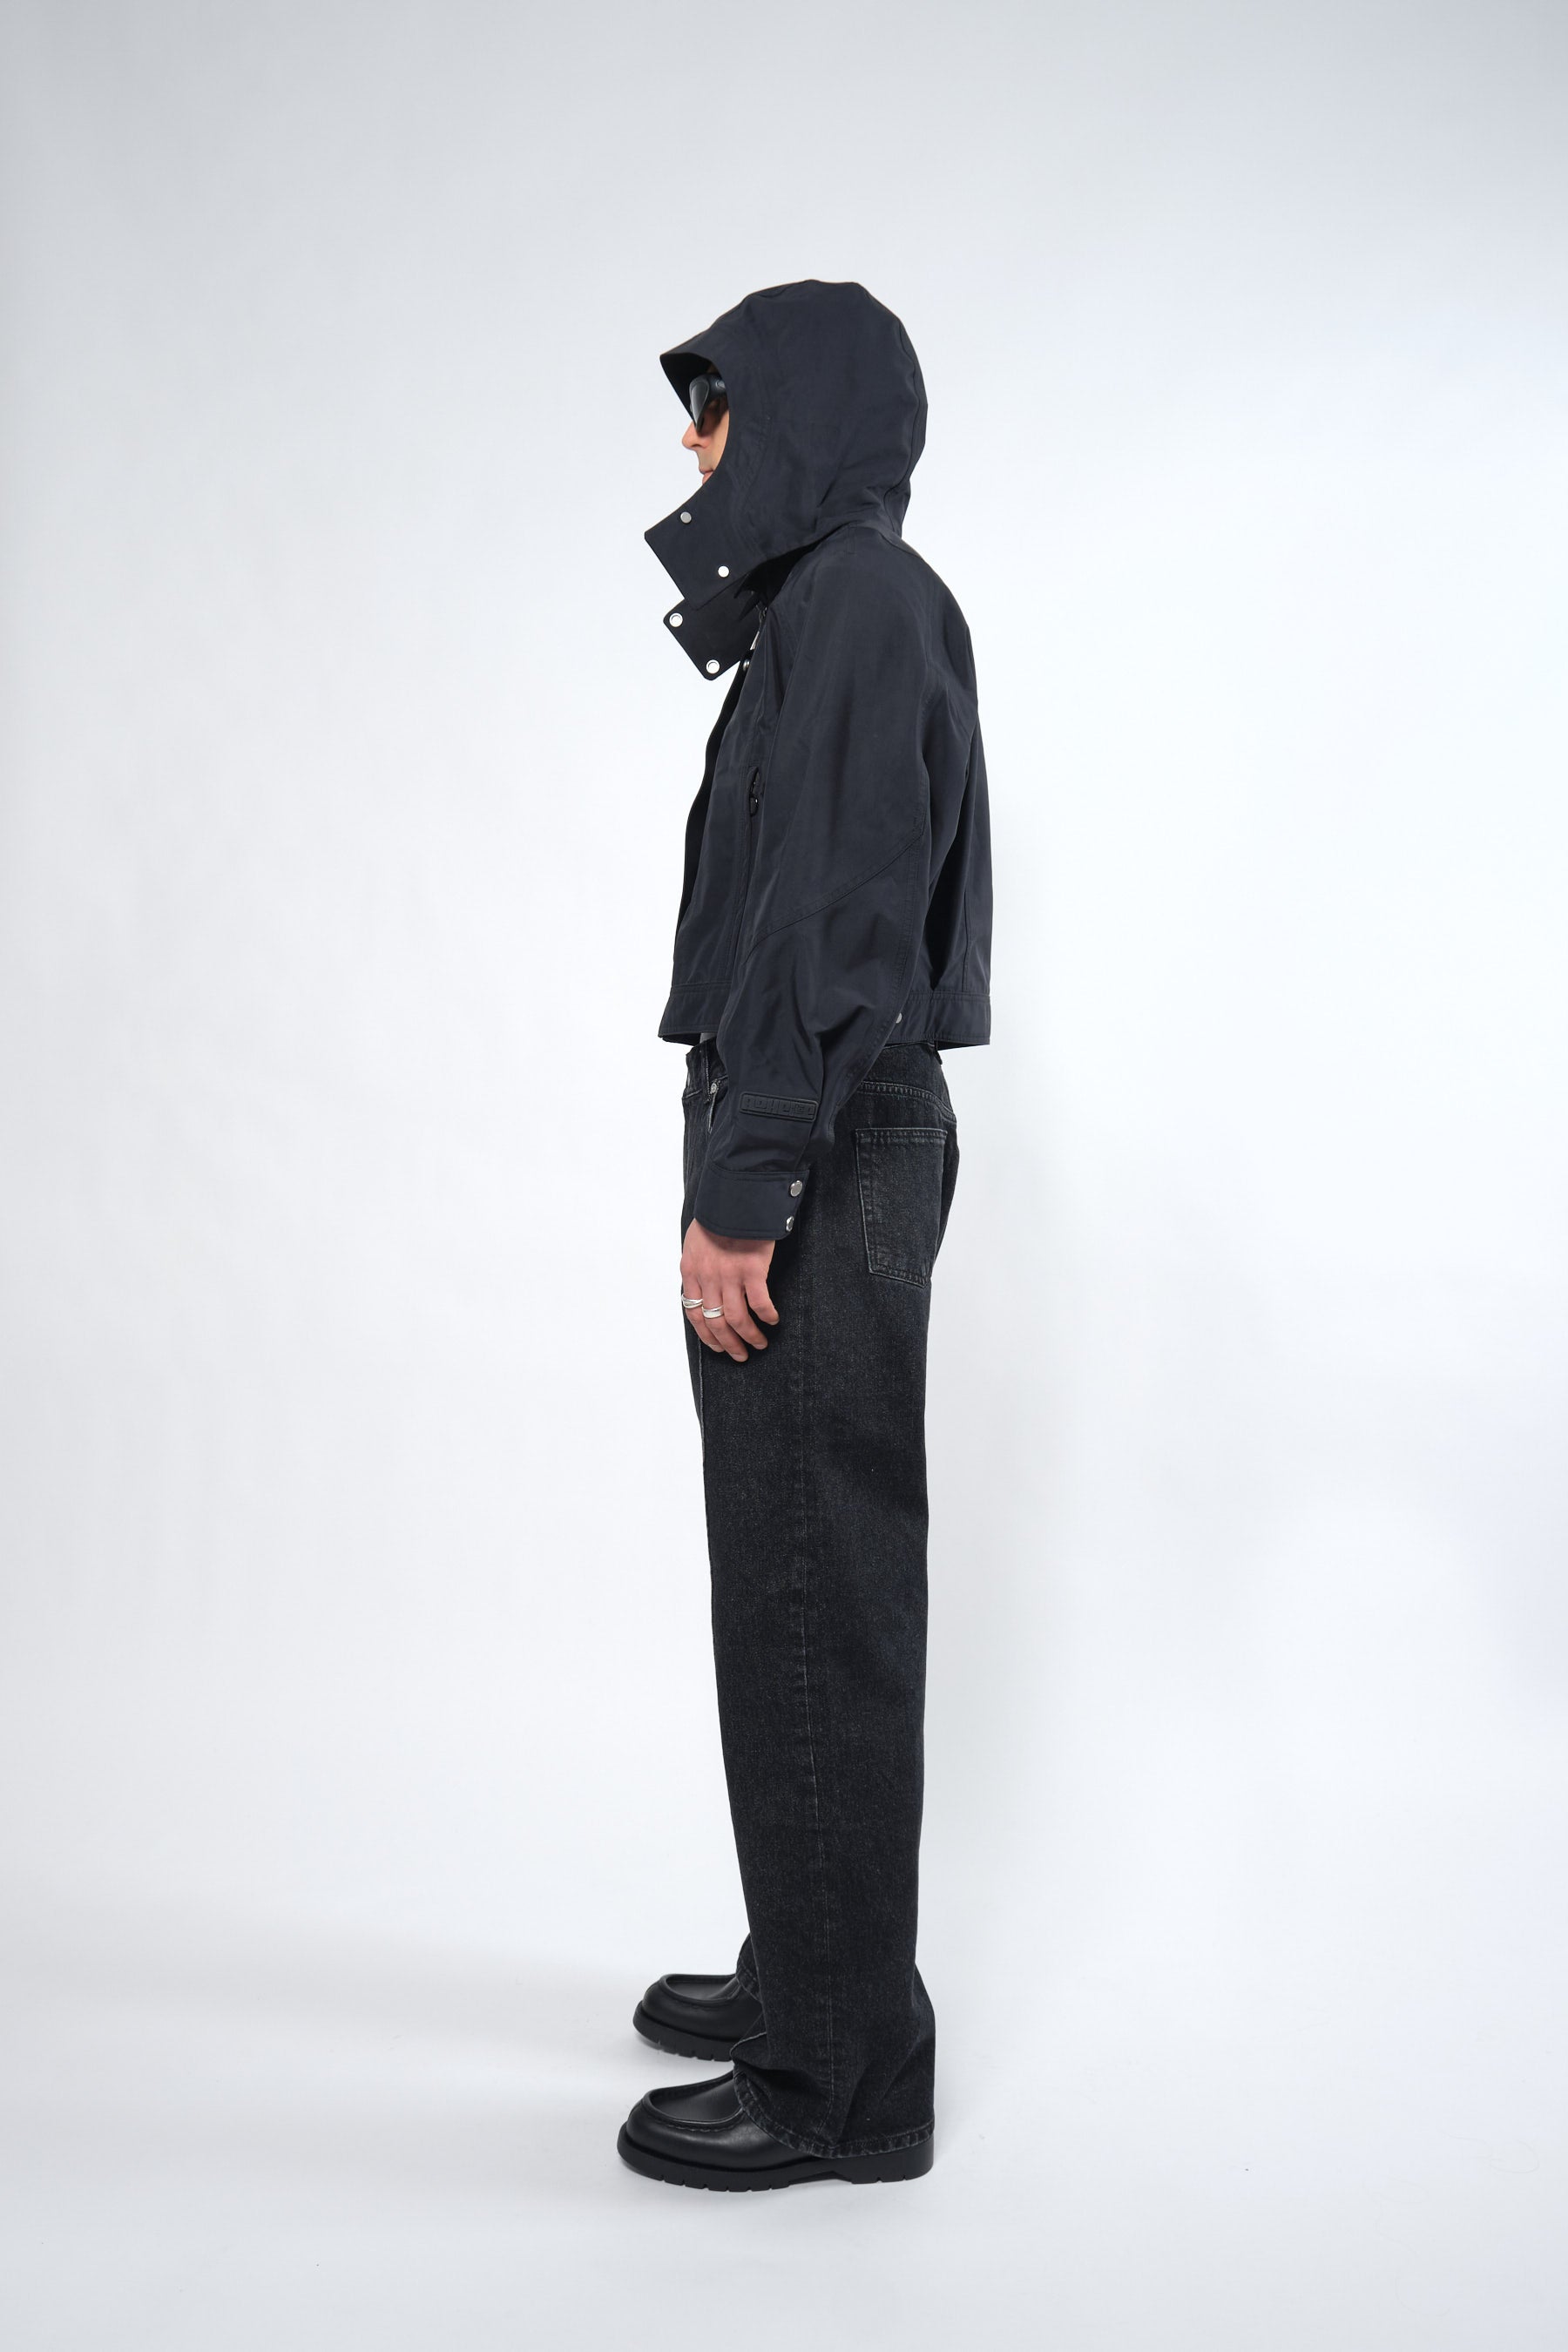  3L Black Waterproof Crop Rain Jacket with Hood - Adhere To  - 5